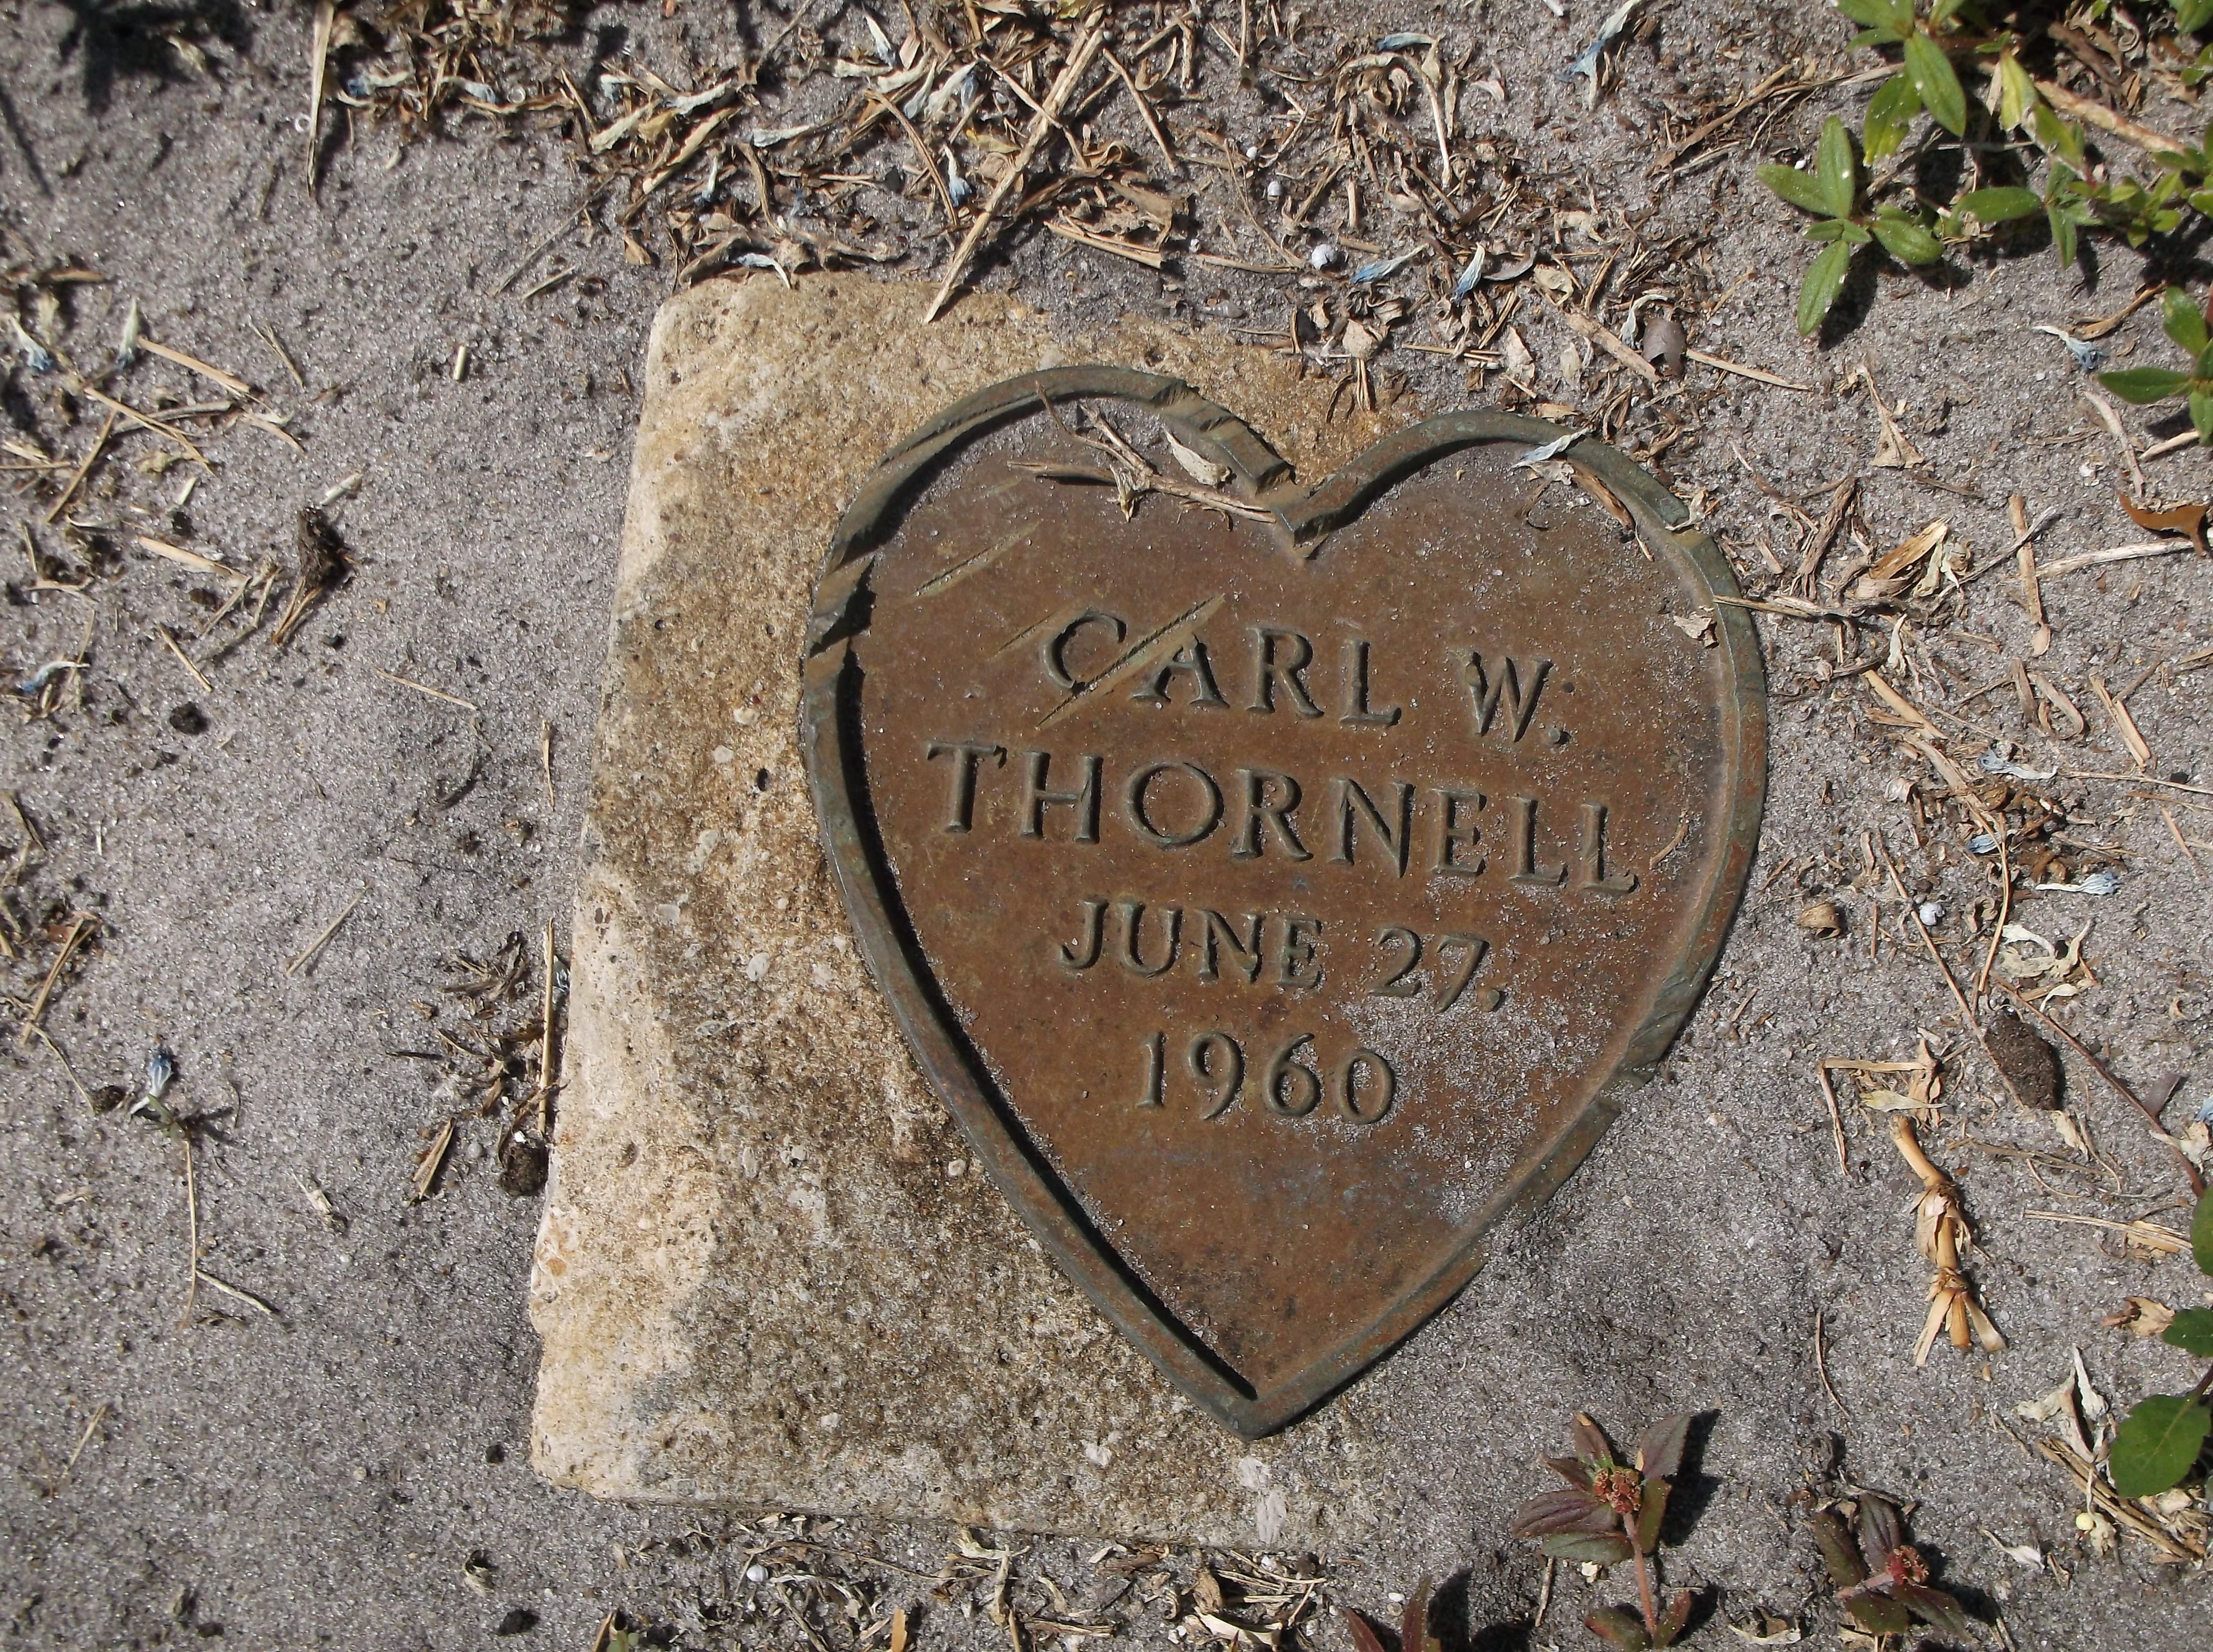 Carl W Thornell